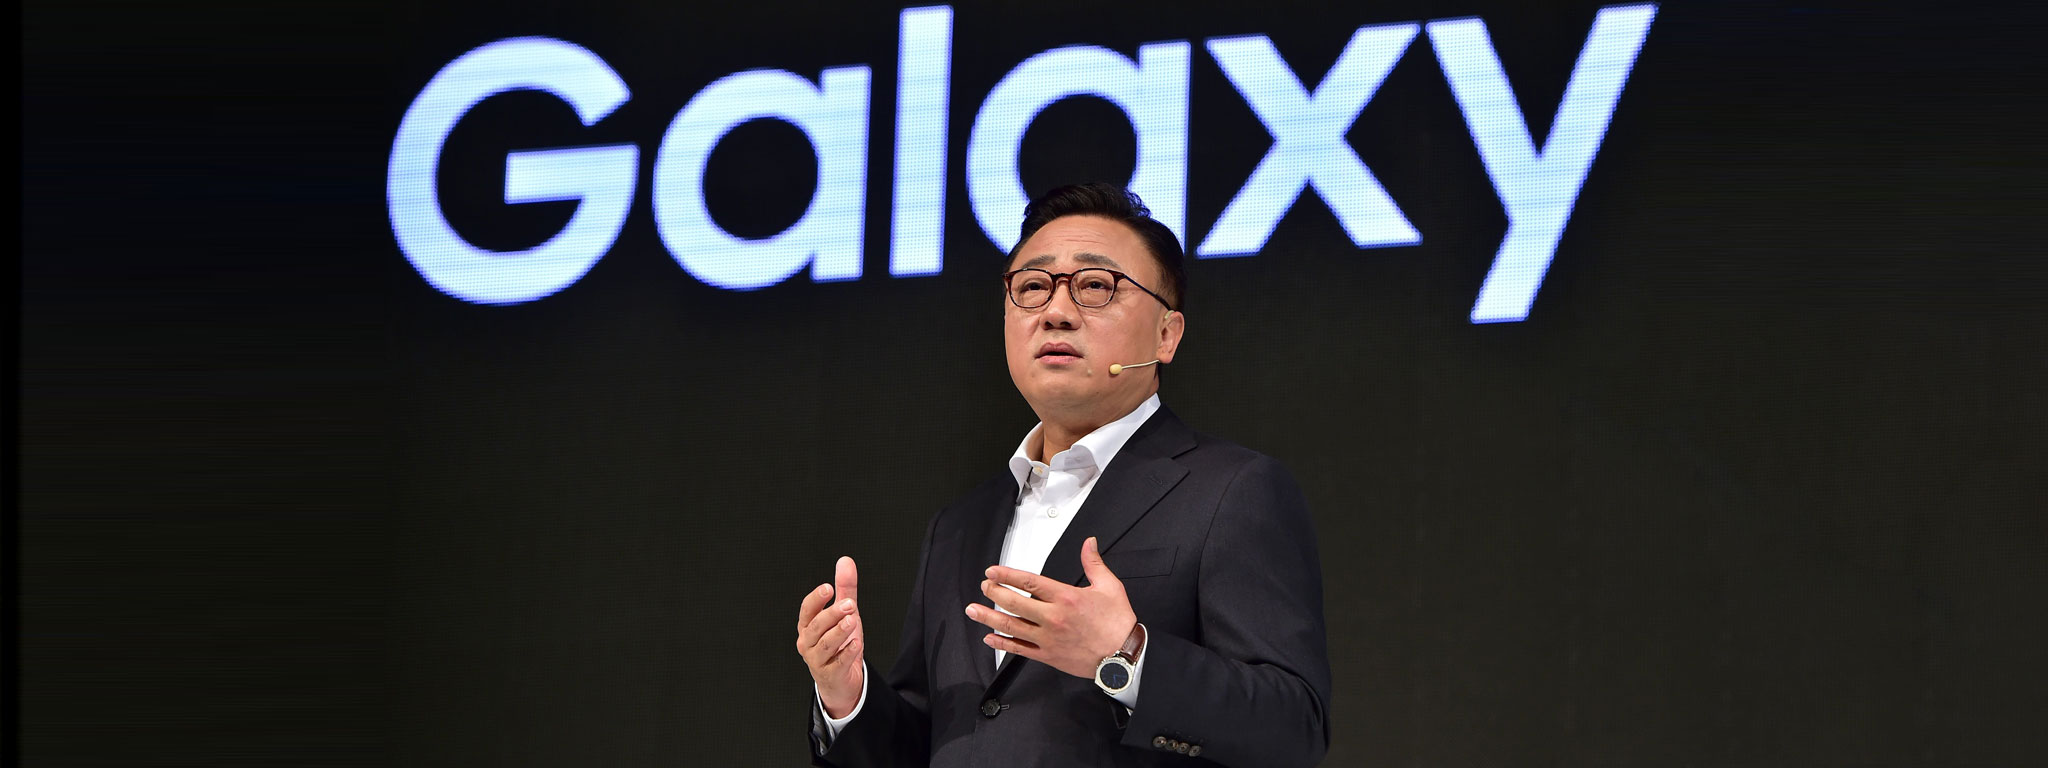 Samsung với Note 8: "Nếu chúng ta sợ đổi mới, chúng ta sẽ chết"